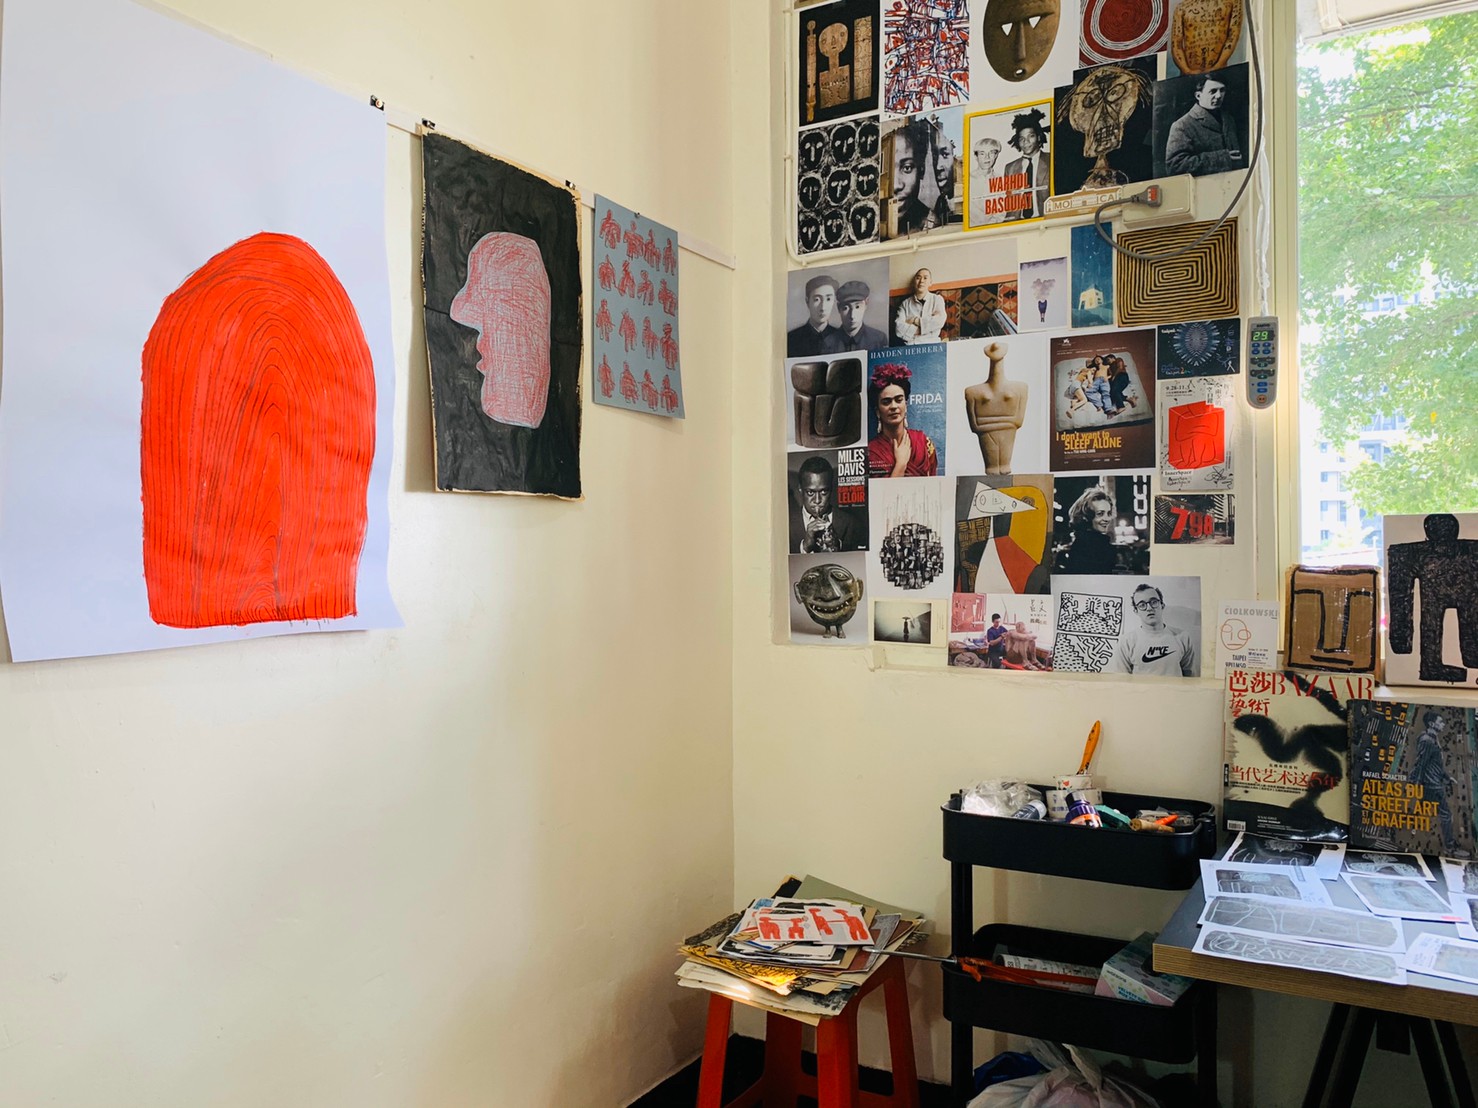 ”工作室一隅藝術家布置的豐富靈感牆”